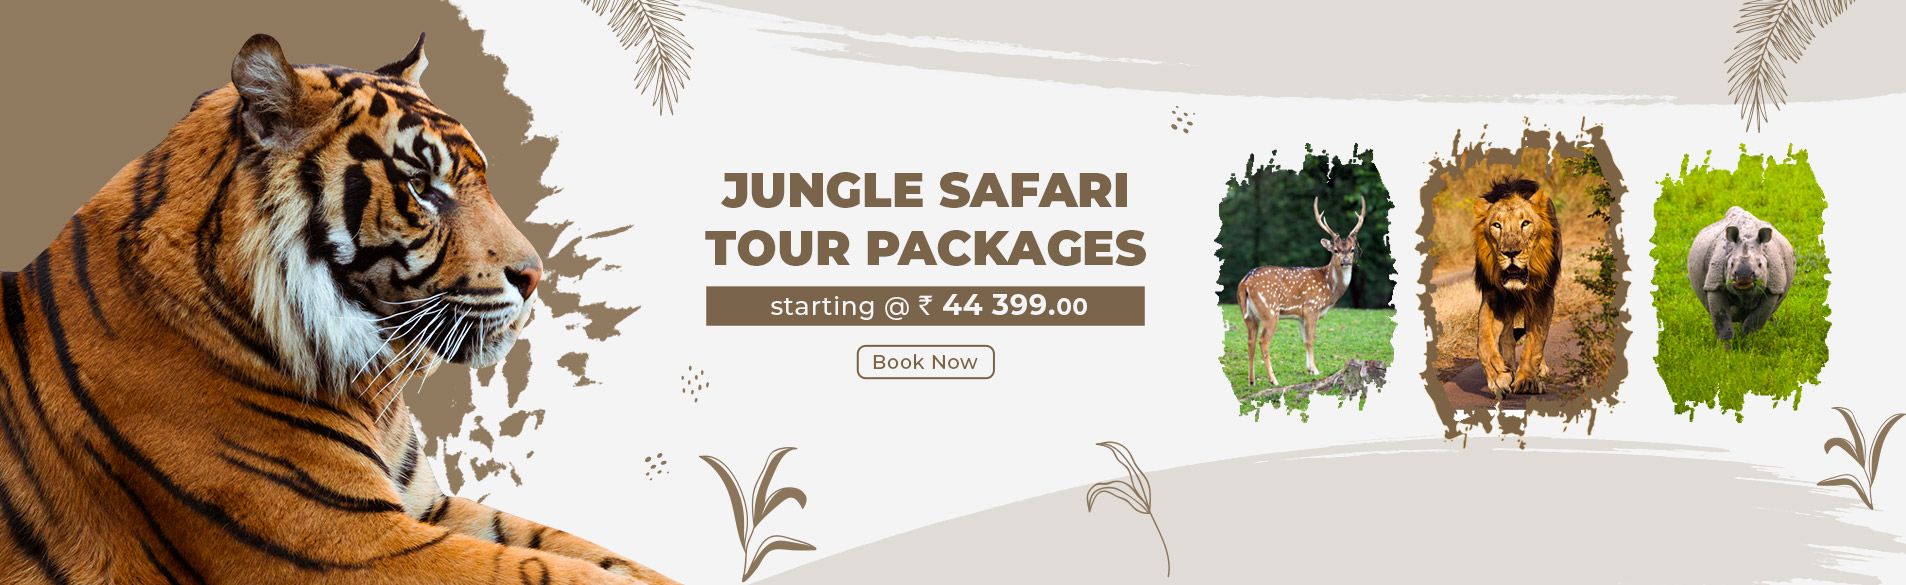 Jungle Safari Tour Packages